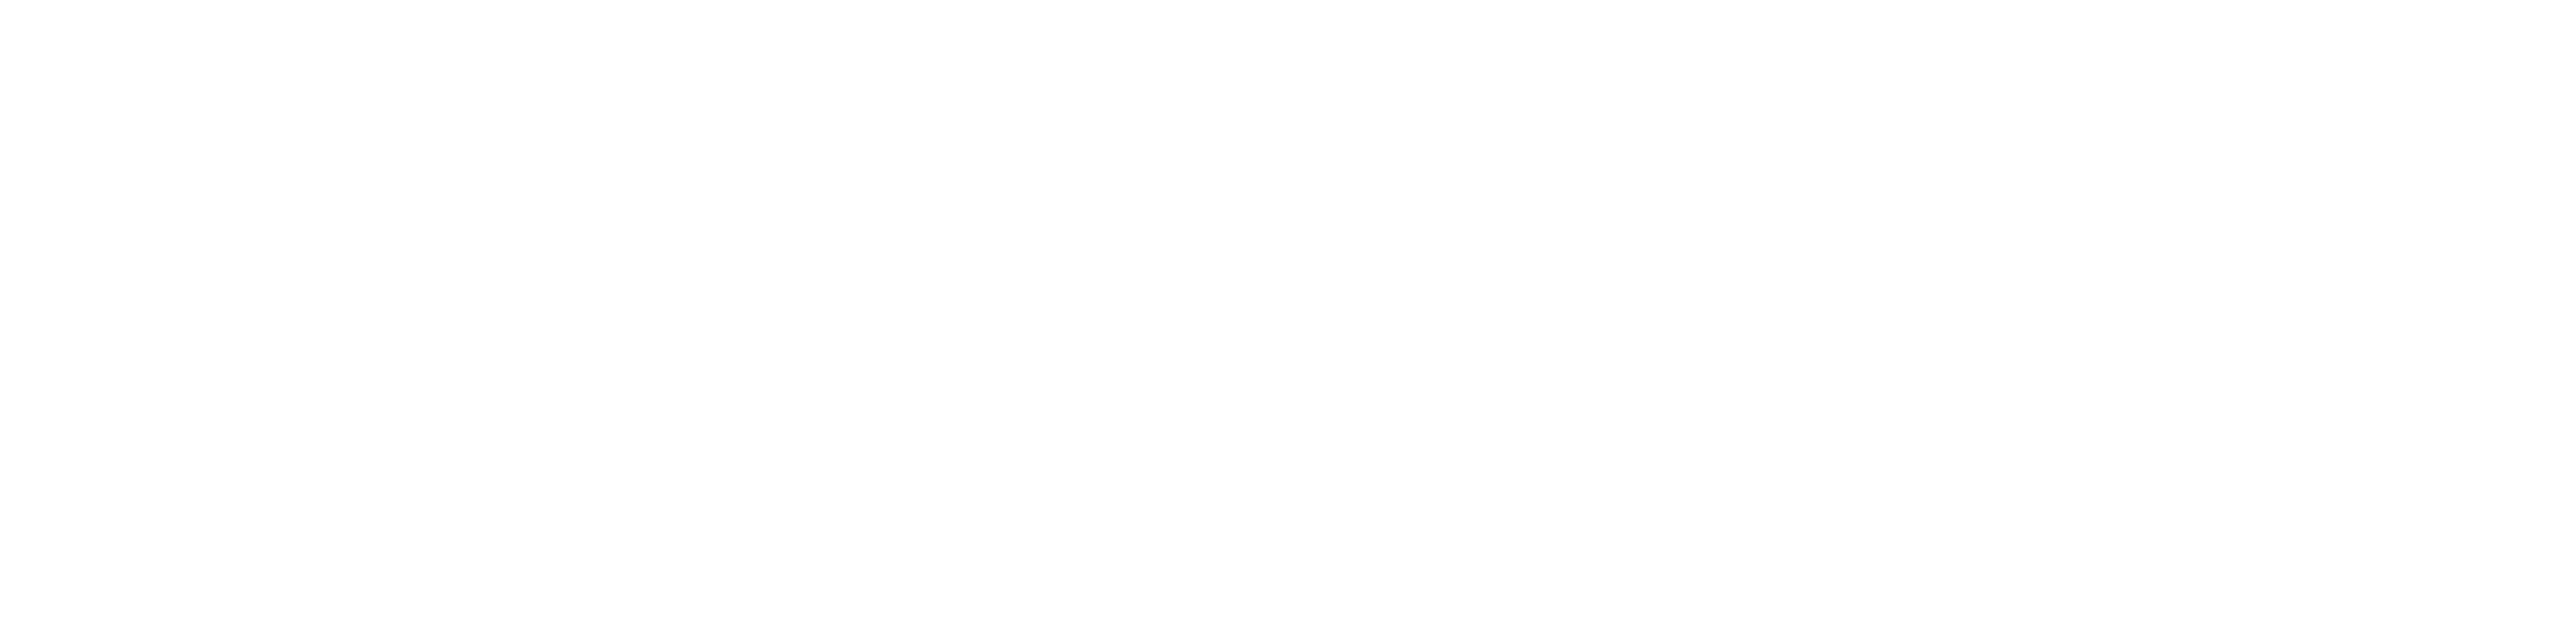 Missing Link logo